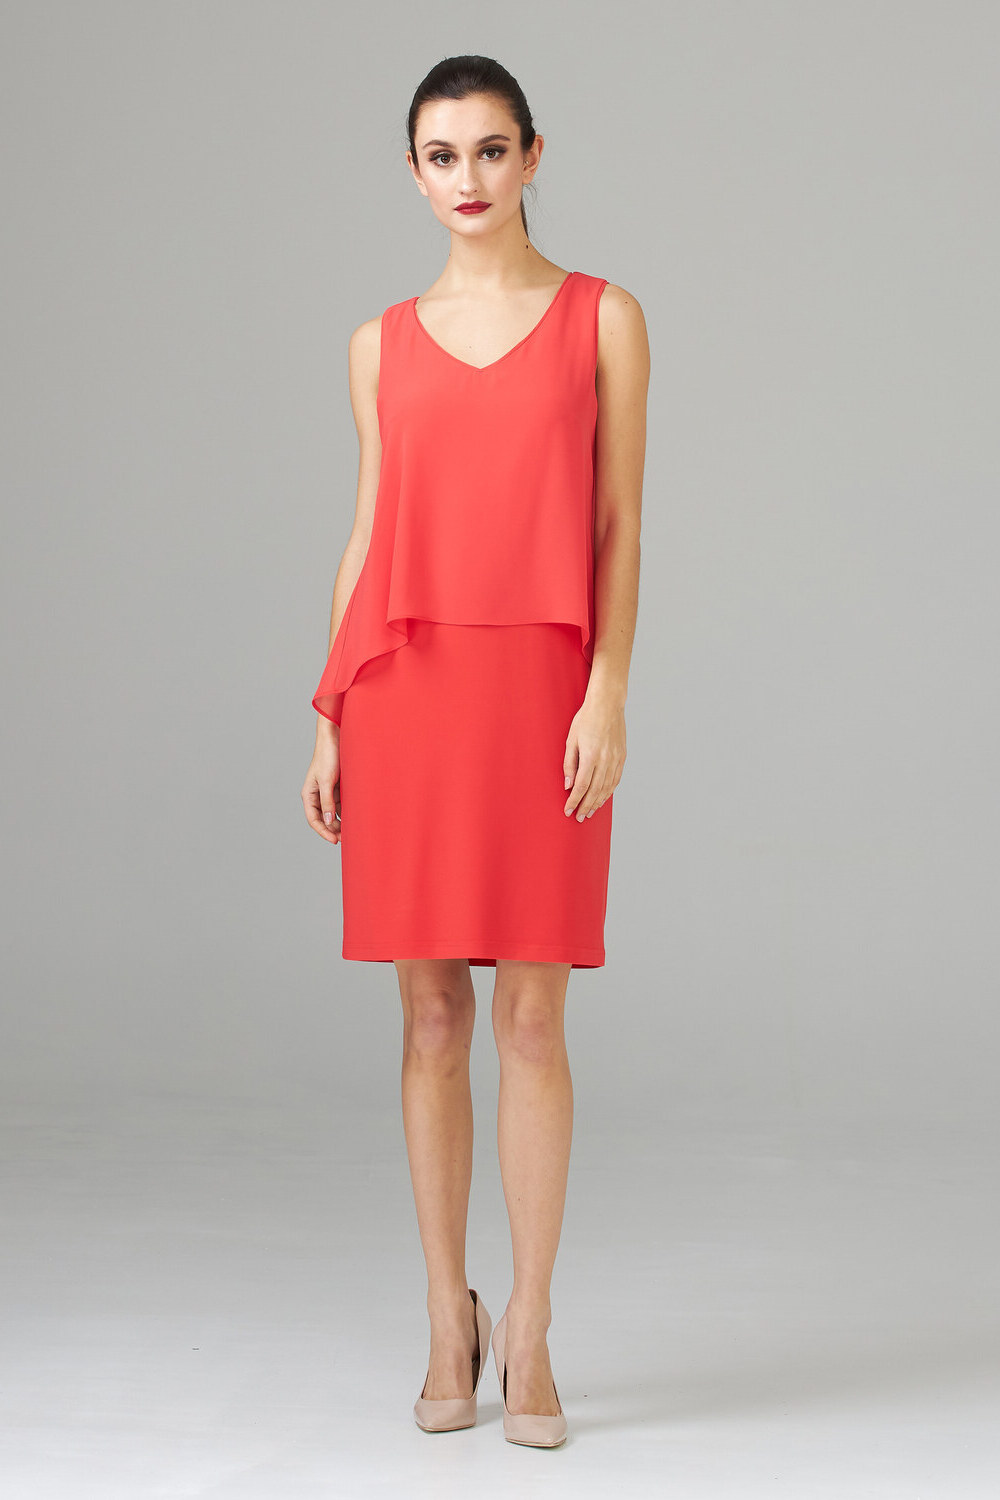 Joseph Ribkoff Dress Style 202398. Papaya